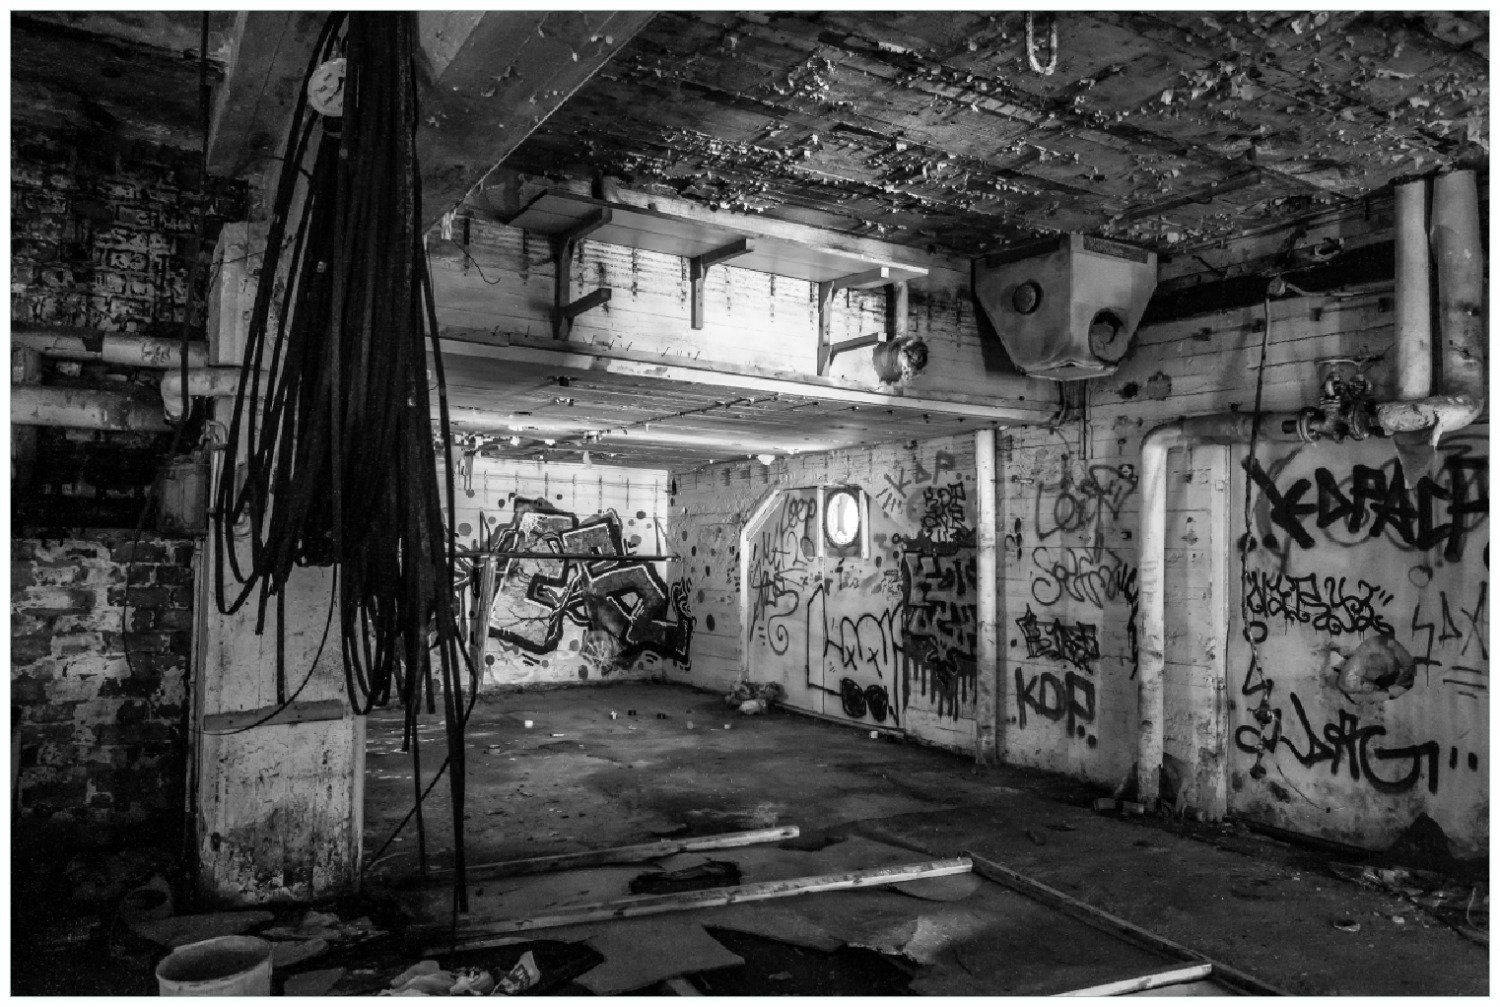 Wallario Poster, Alte verlassene Fabrik in schwarz weiß mit Graffiti, in verschiedenen Ausführungen